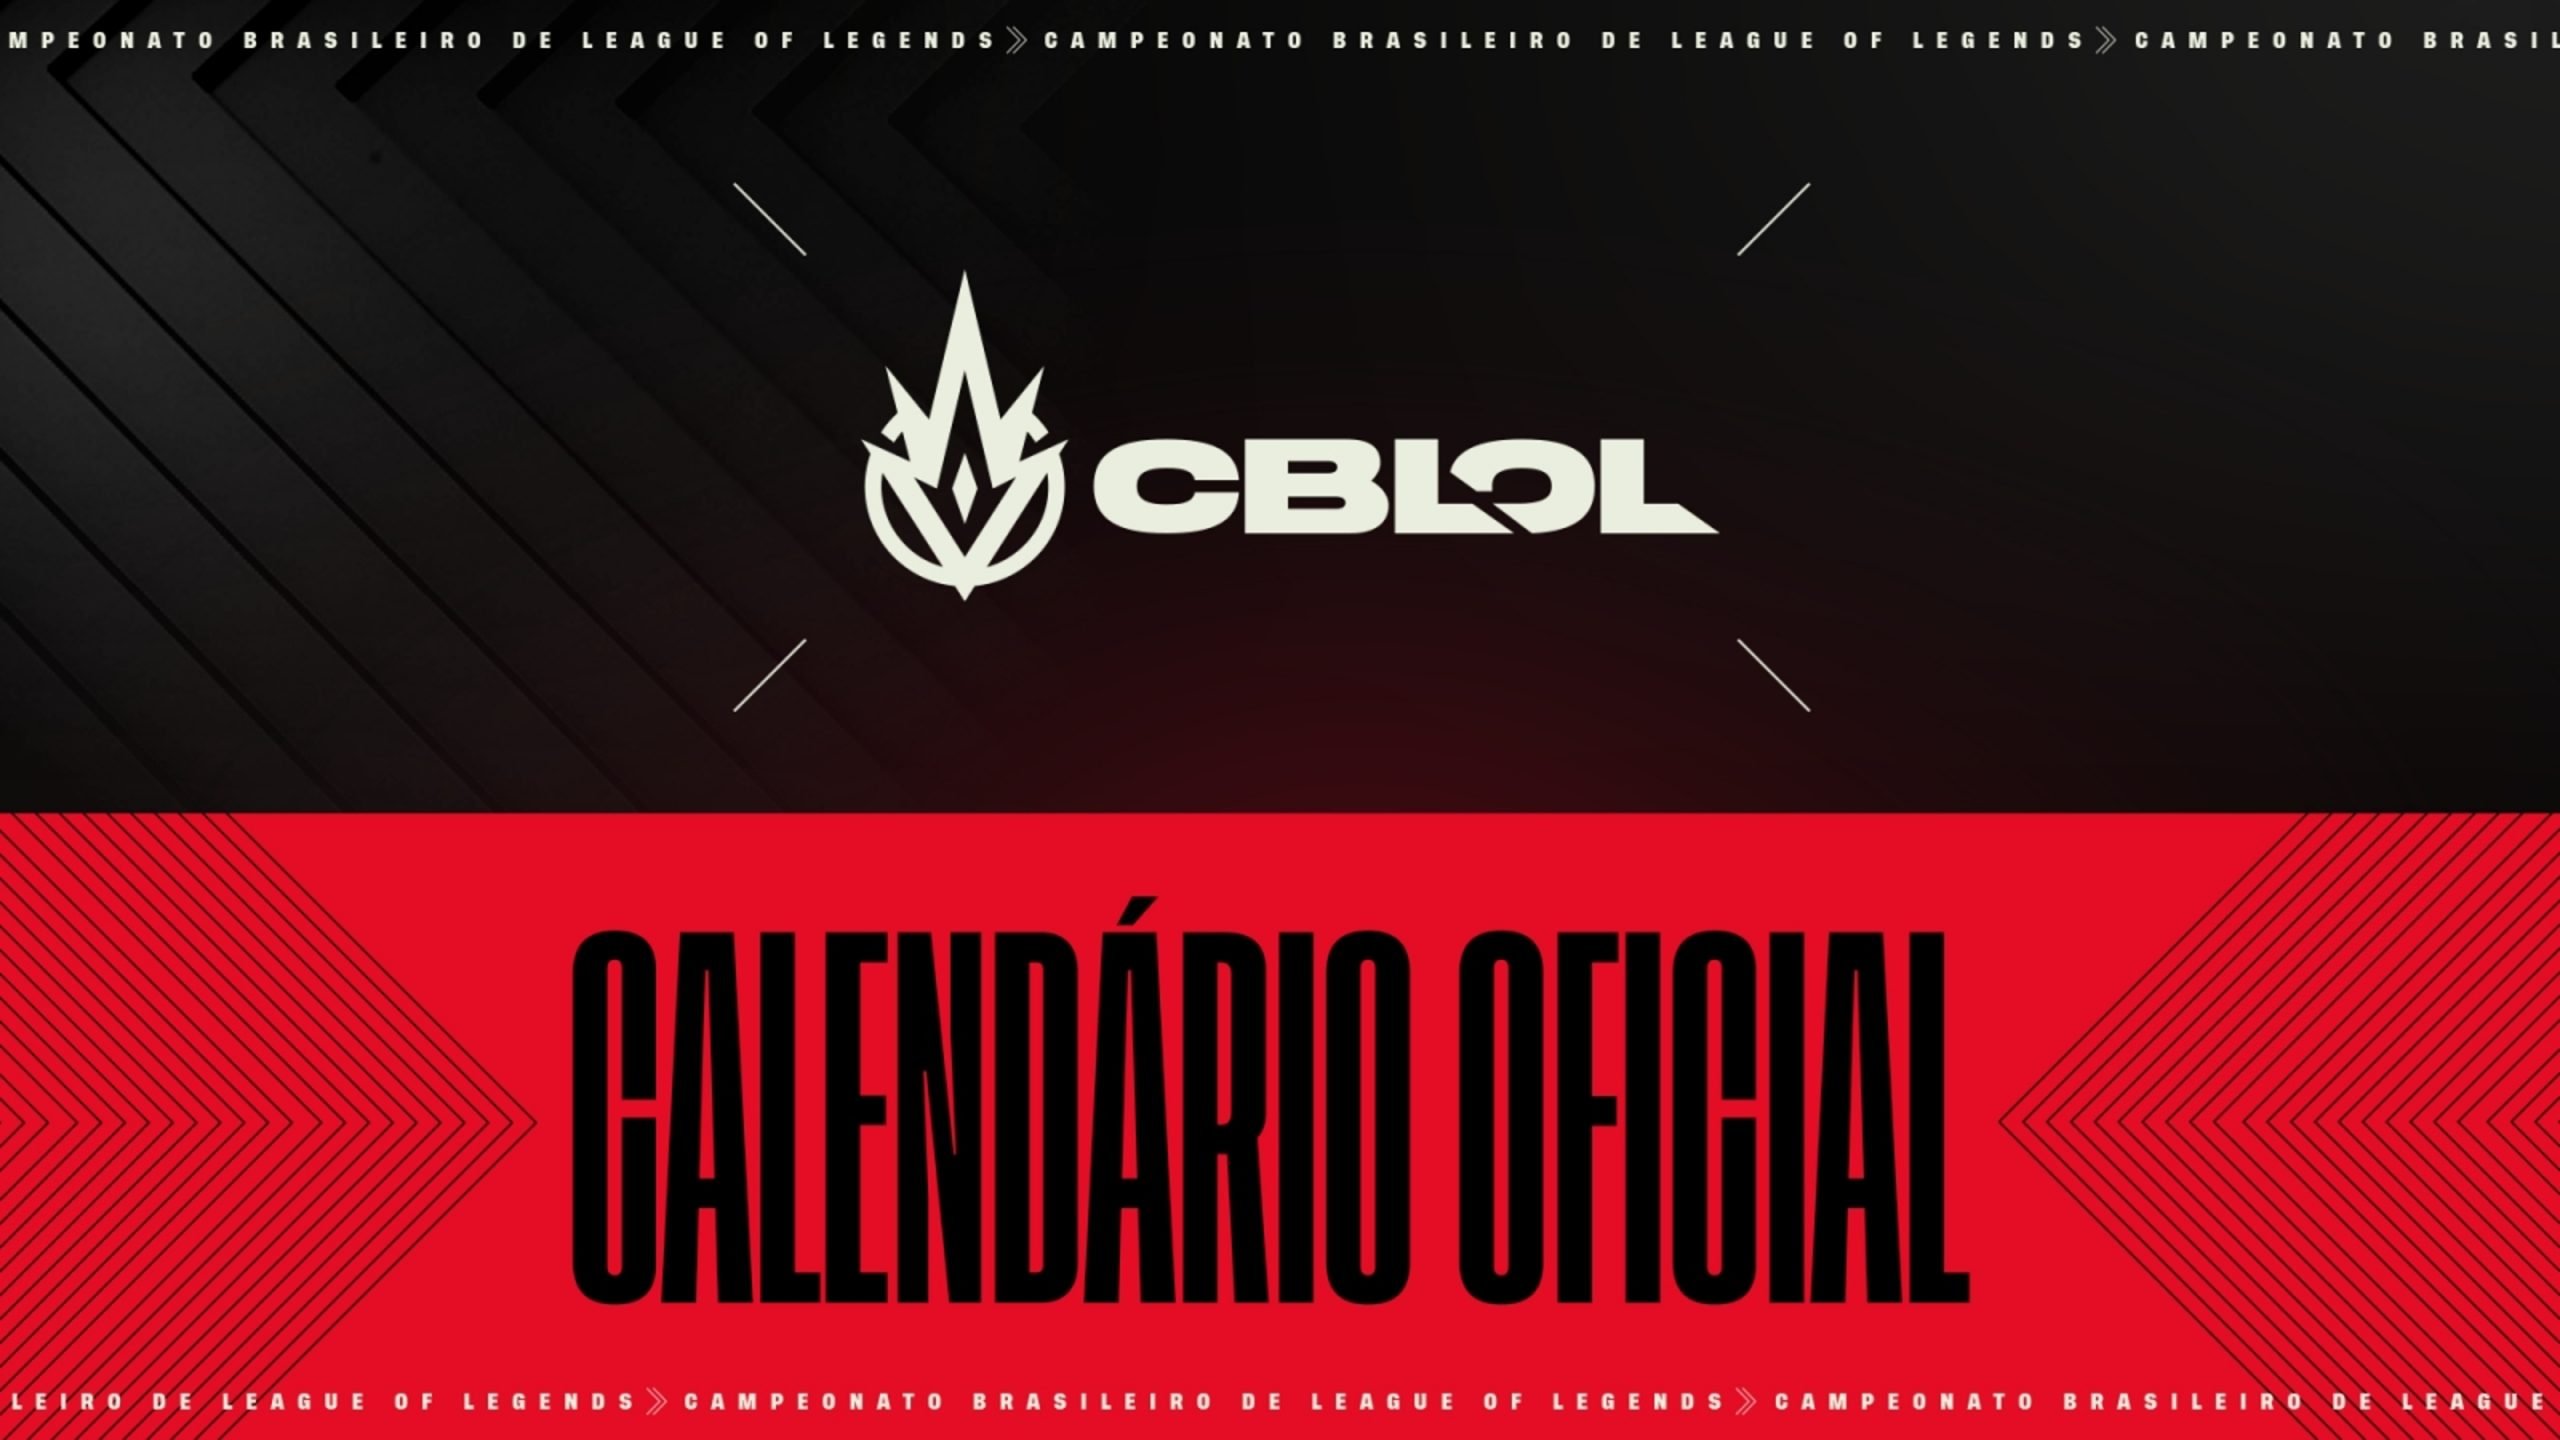 Calendário do CBLoL foi divulgado